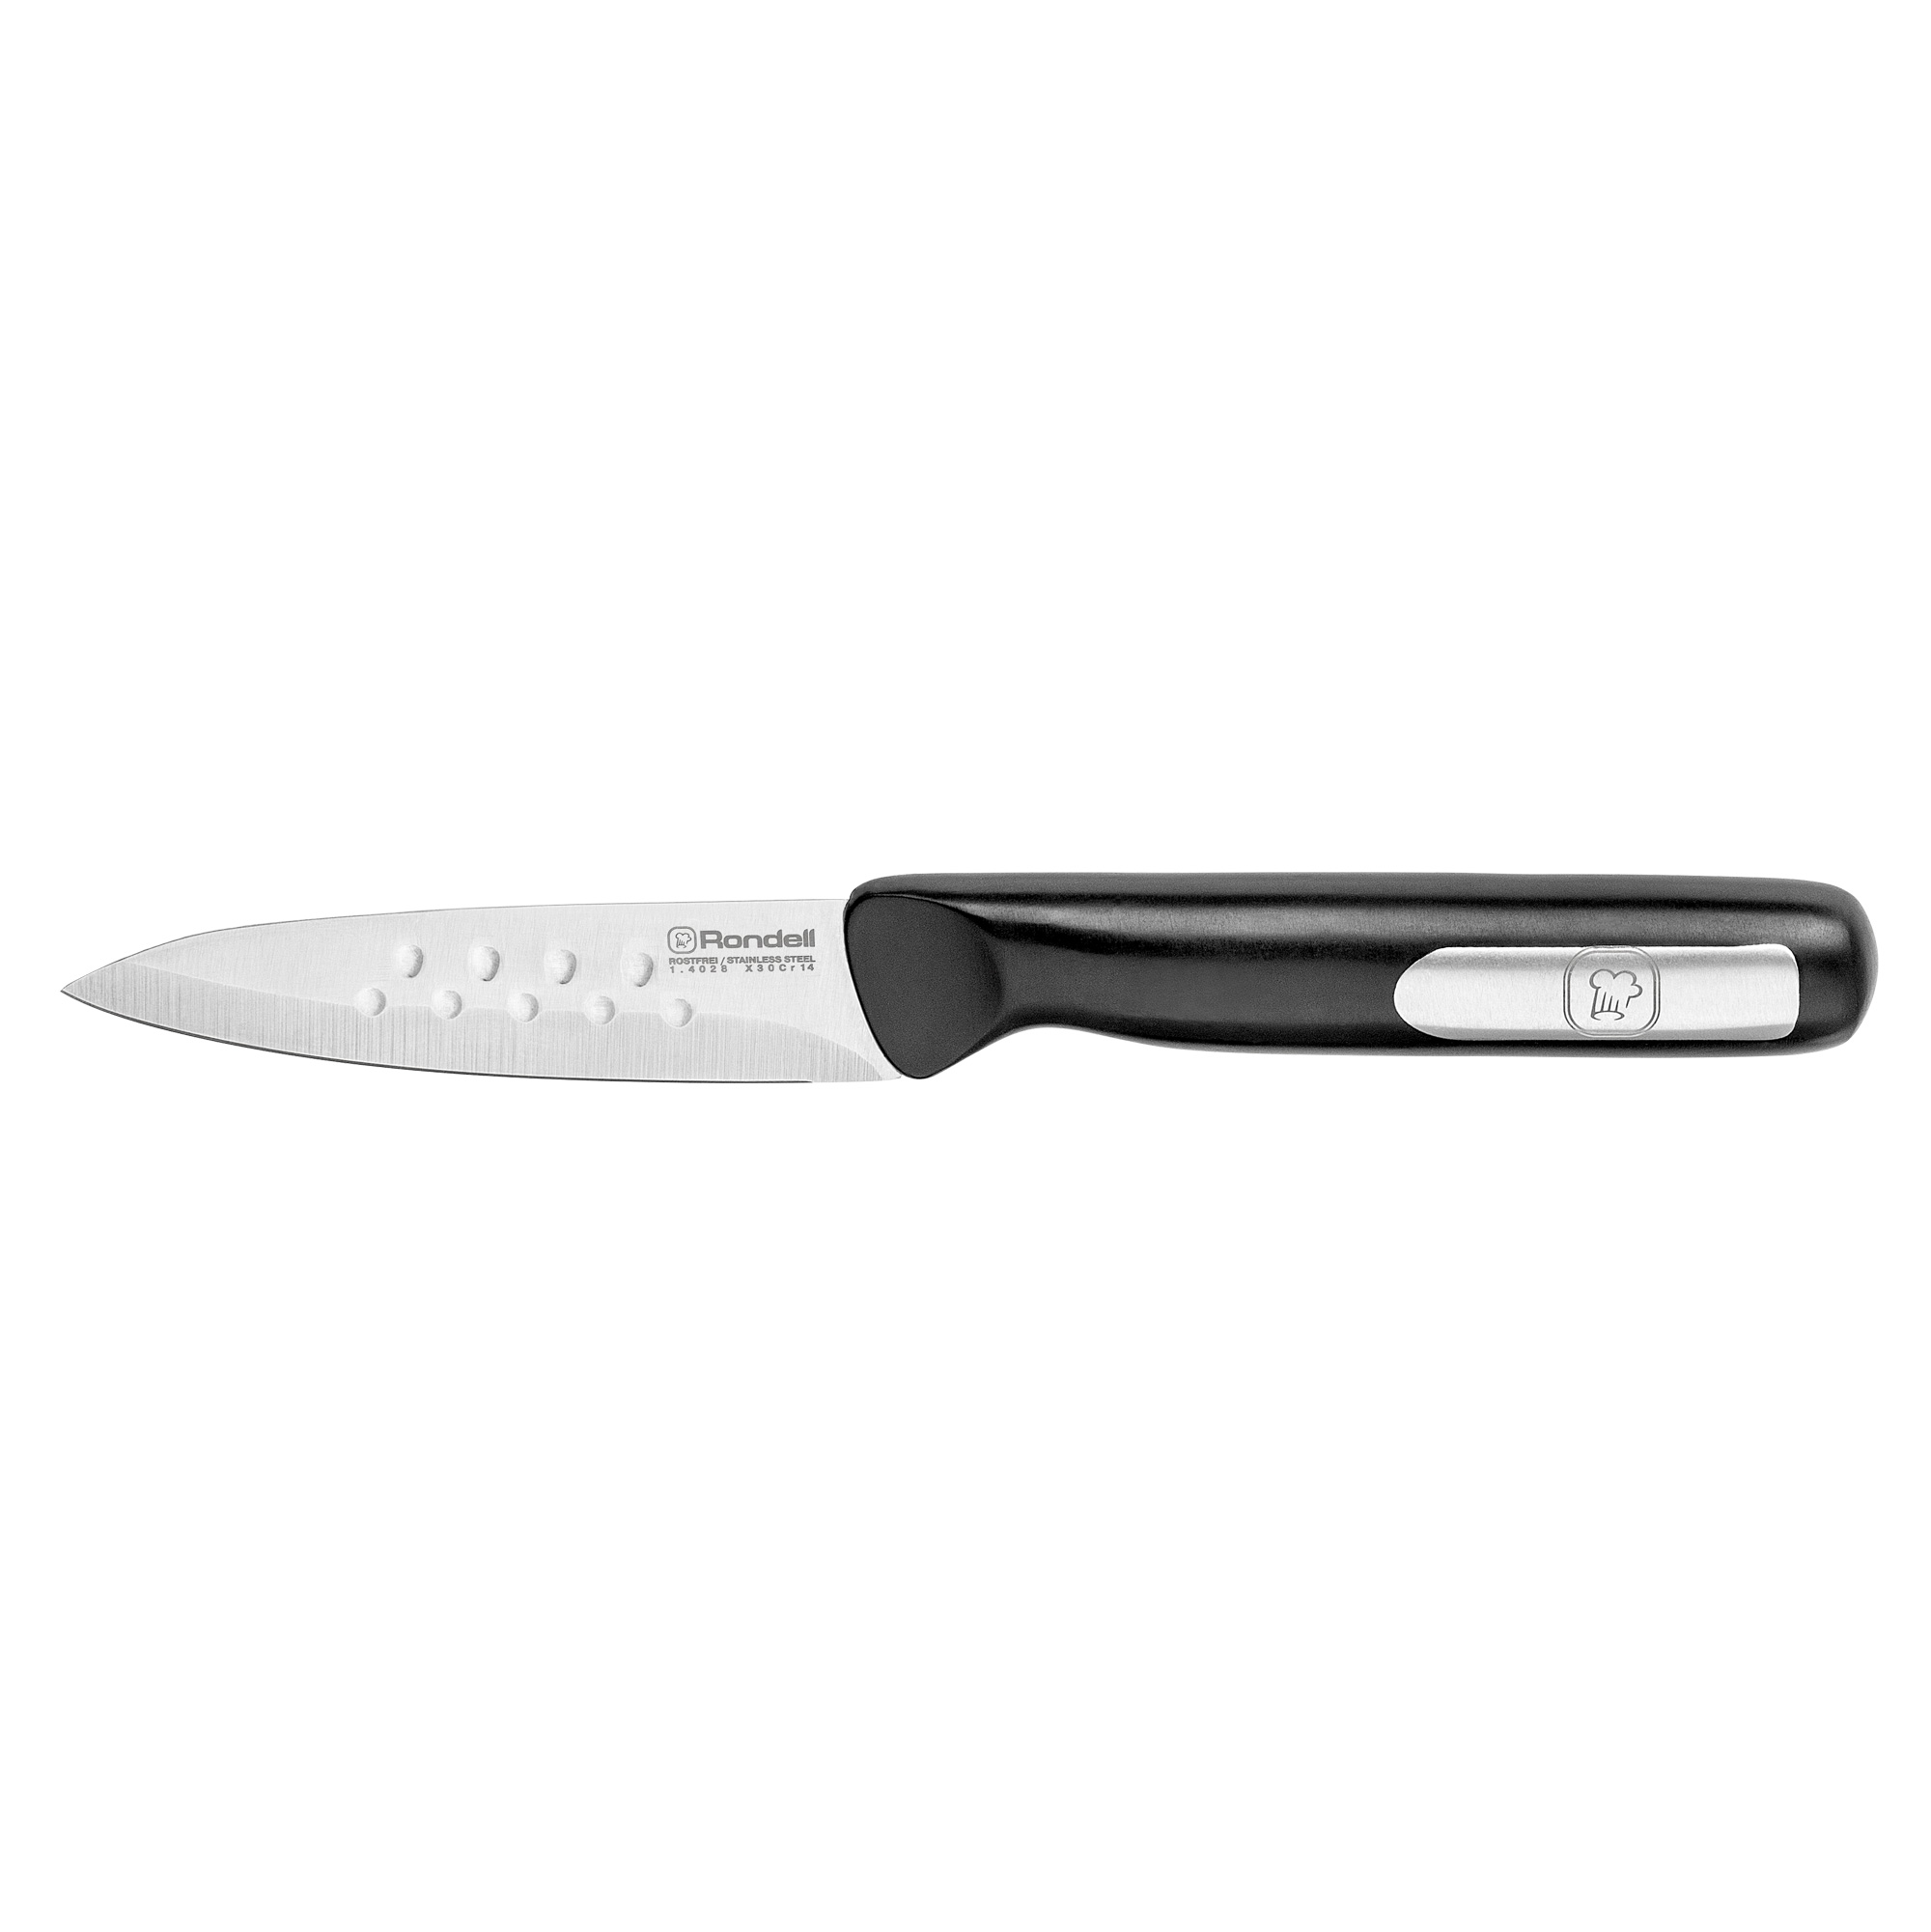 Набор из 3 кухонных ножей и разделочной доски  Rondell RD-1569 Bayoneta, черный